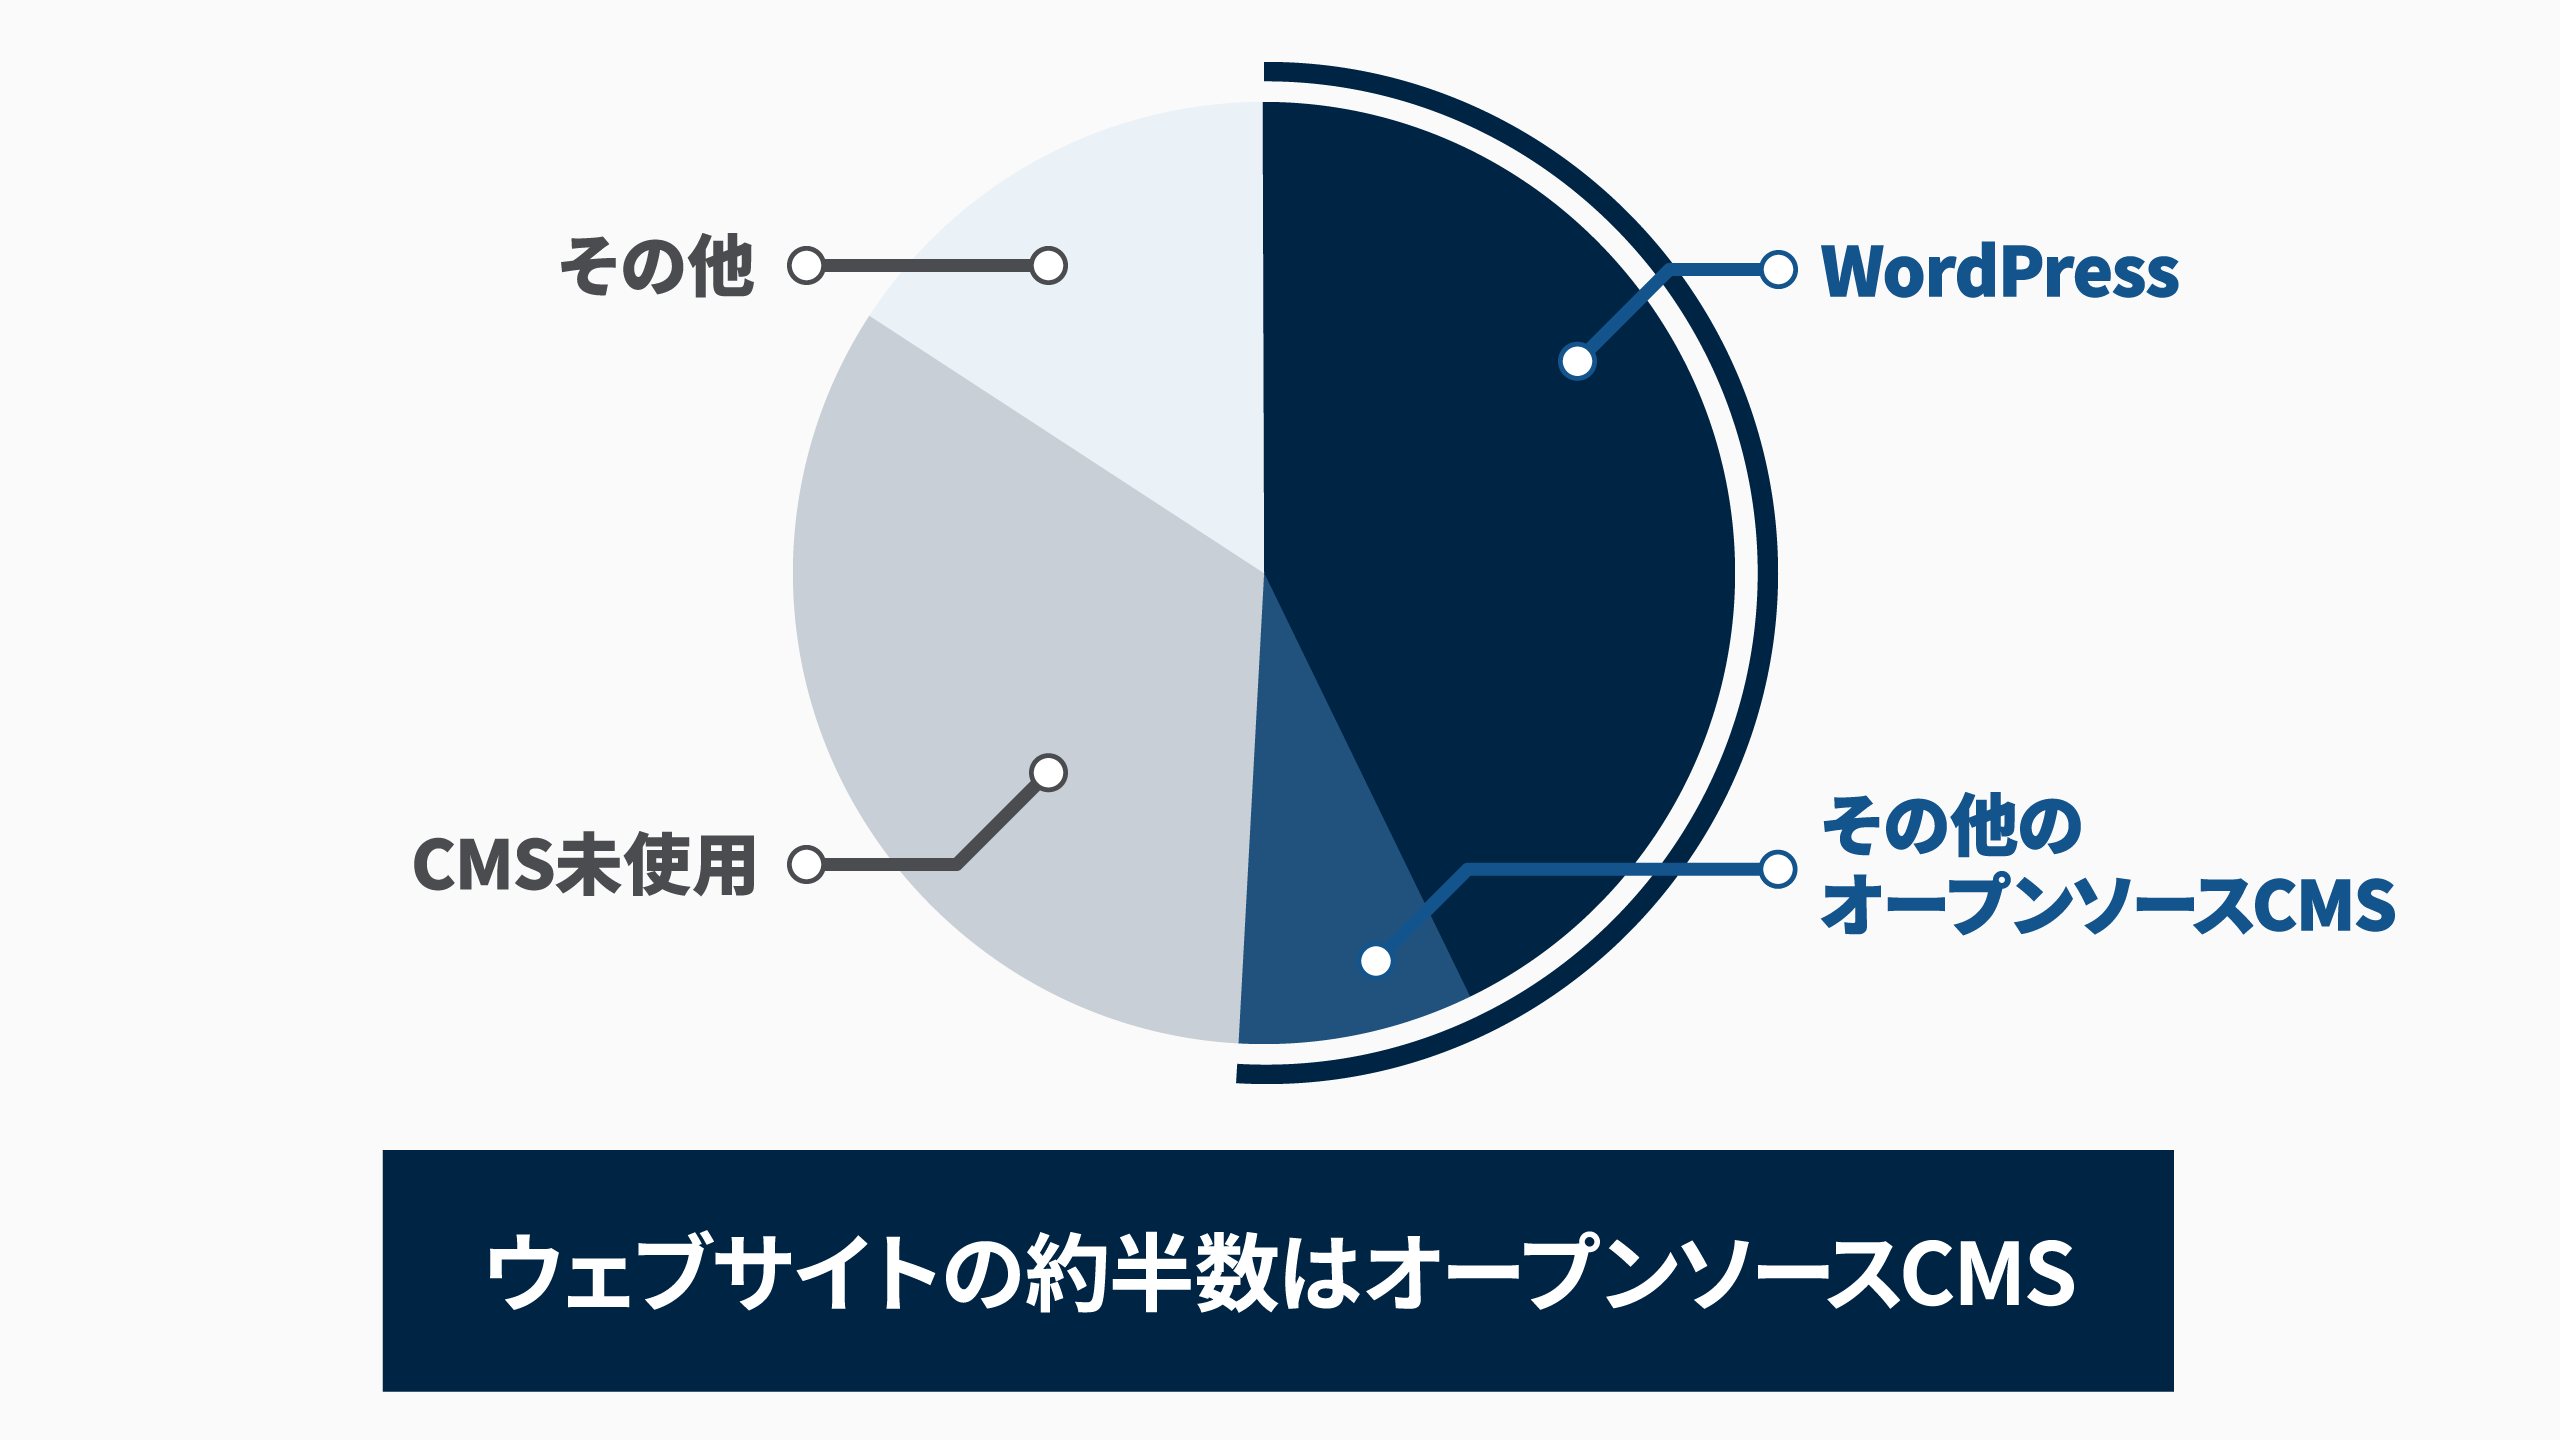 WordPressが全体の43%、DrupalやJoomlaなどの他オープンソースCMSを合わせると全体の50%を超えます。約33%がCMS未使用のサイトで、残りが商用パッケージCMSやクラウドCMSです